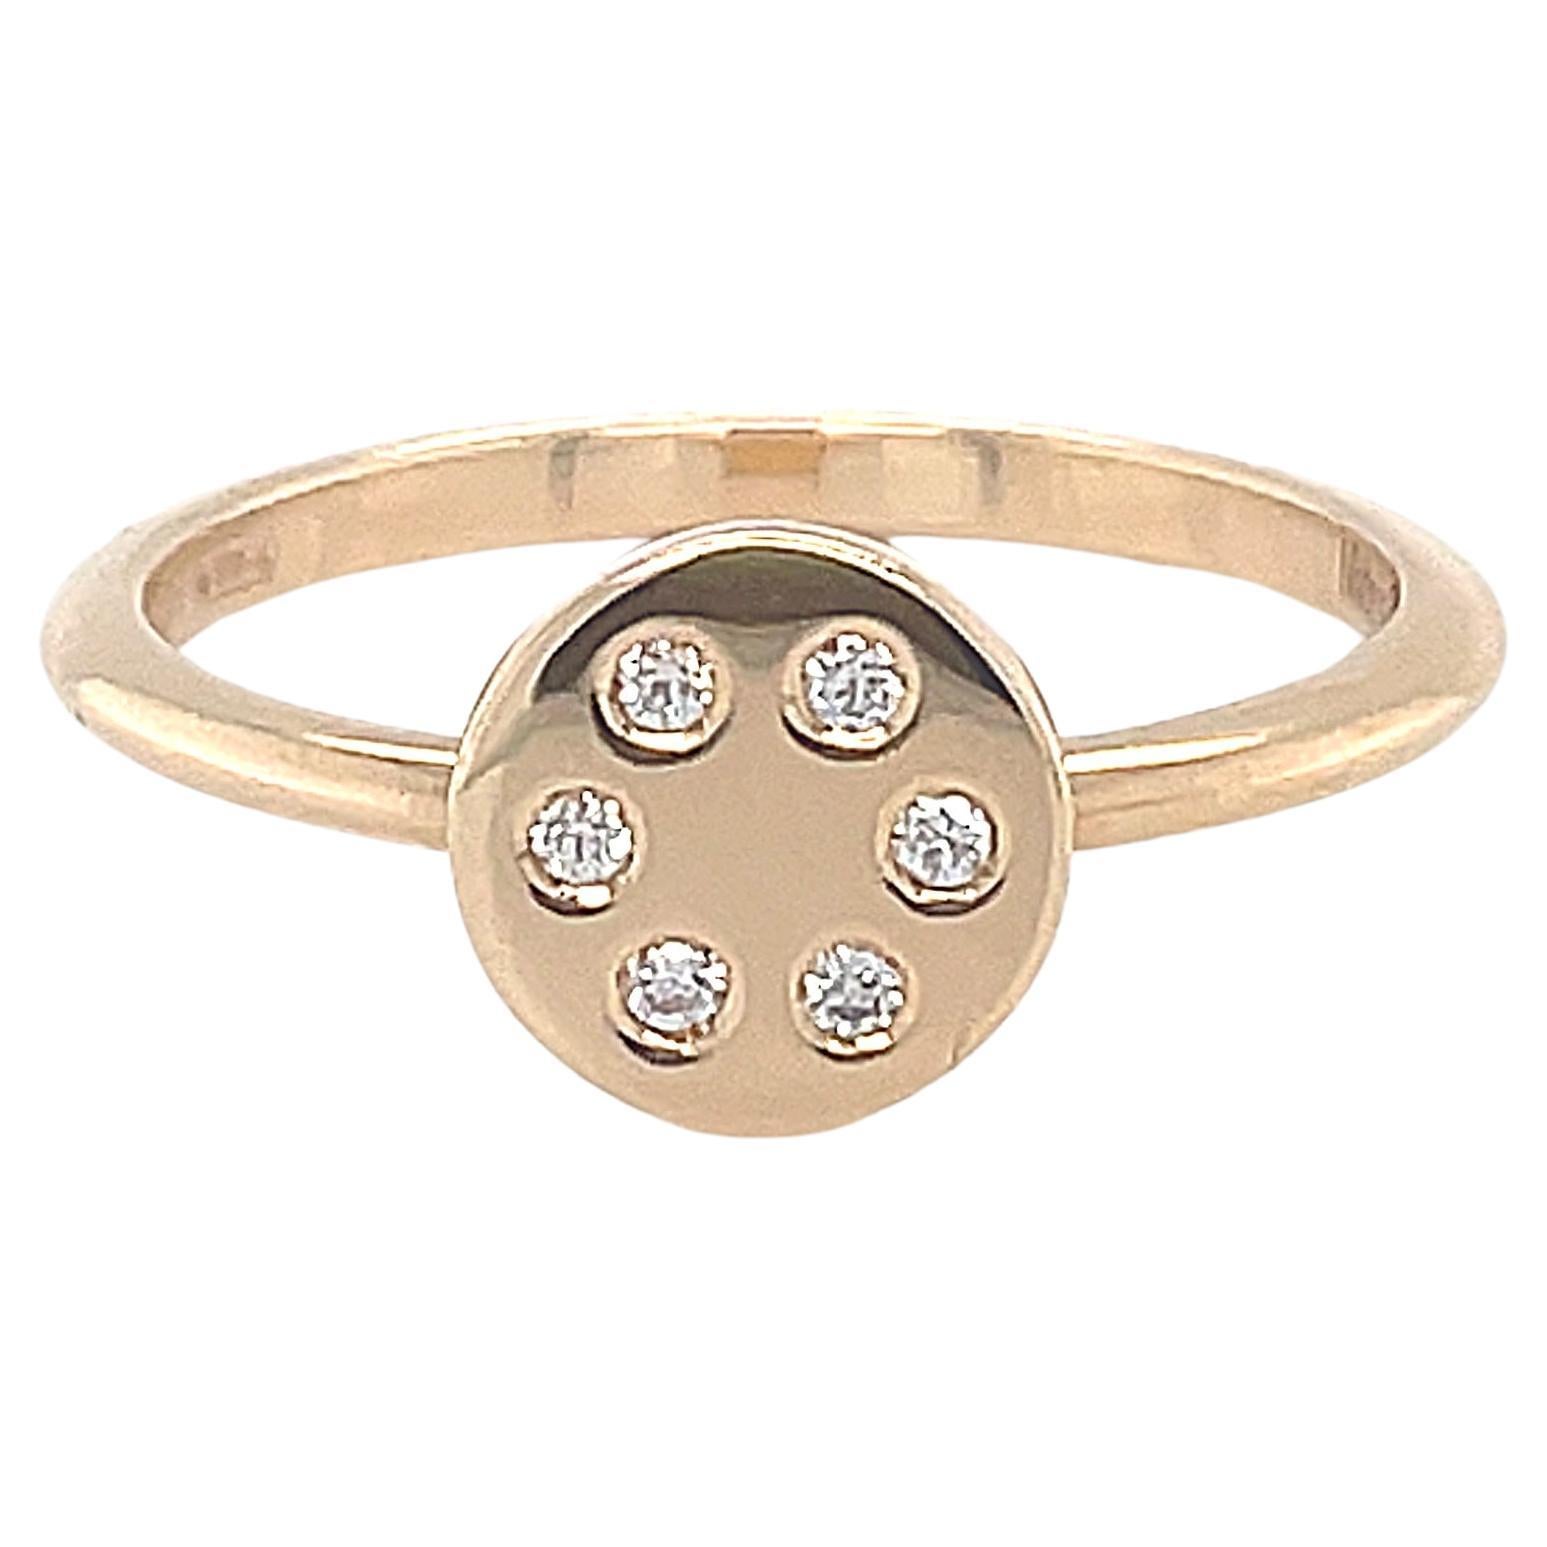 18 Karat Rose Gold Round Diamond Fashion Ring